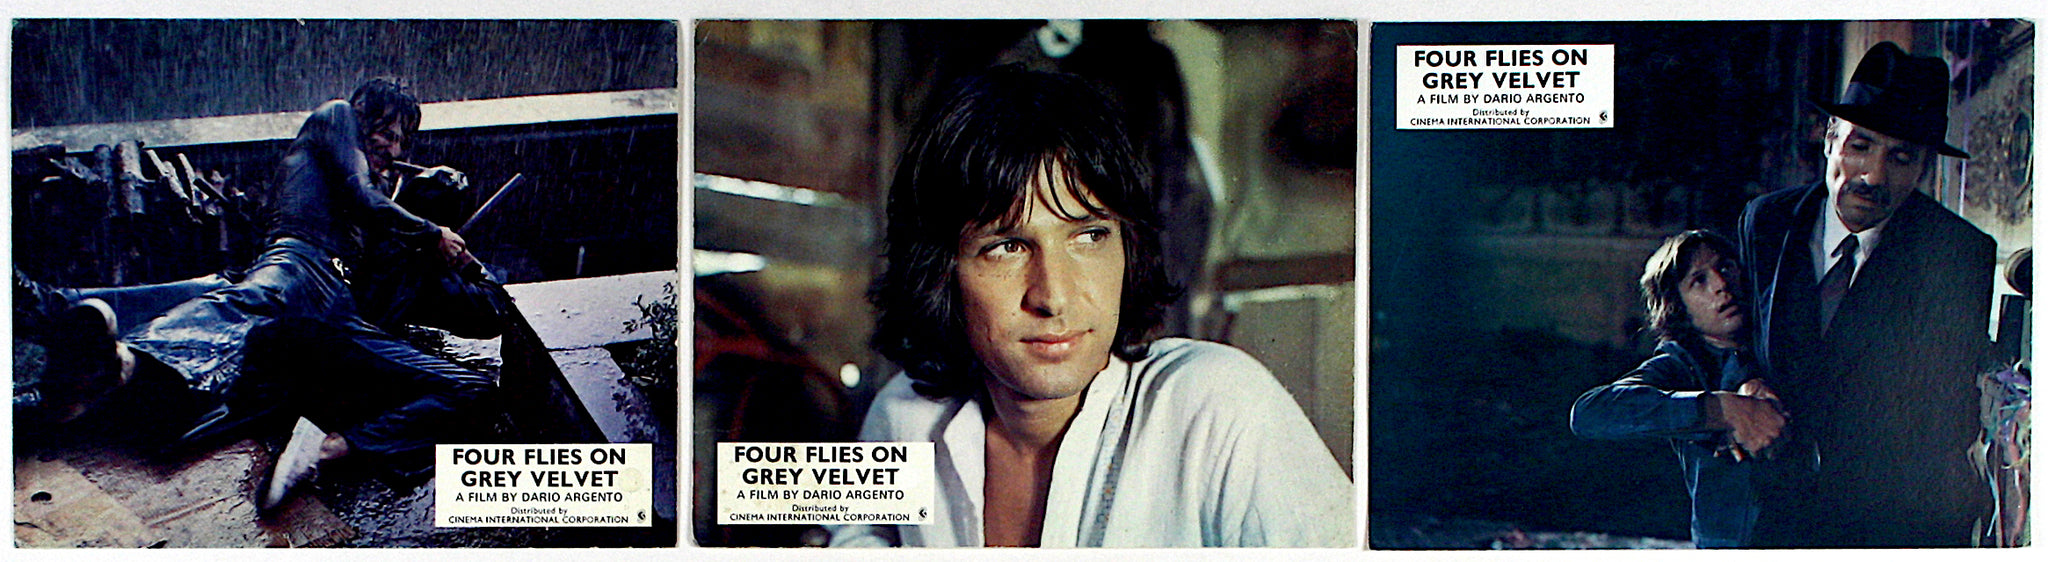 Four Flies on Grey Velvet (1971) UK FOH Stills